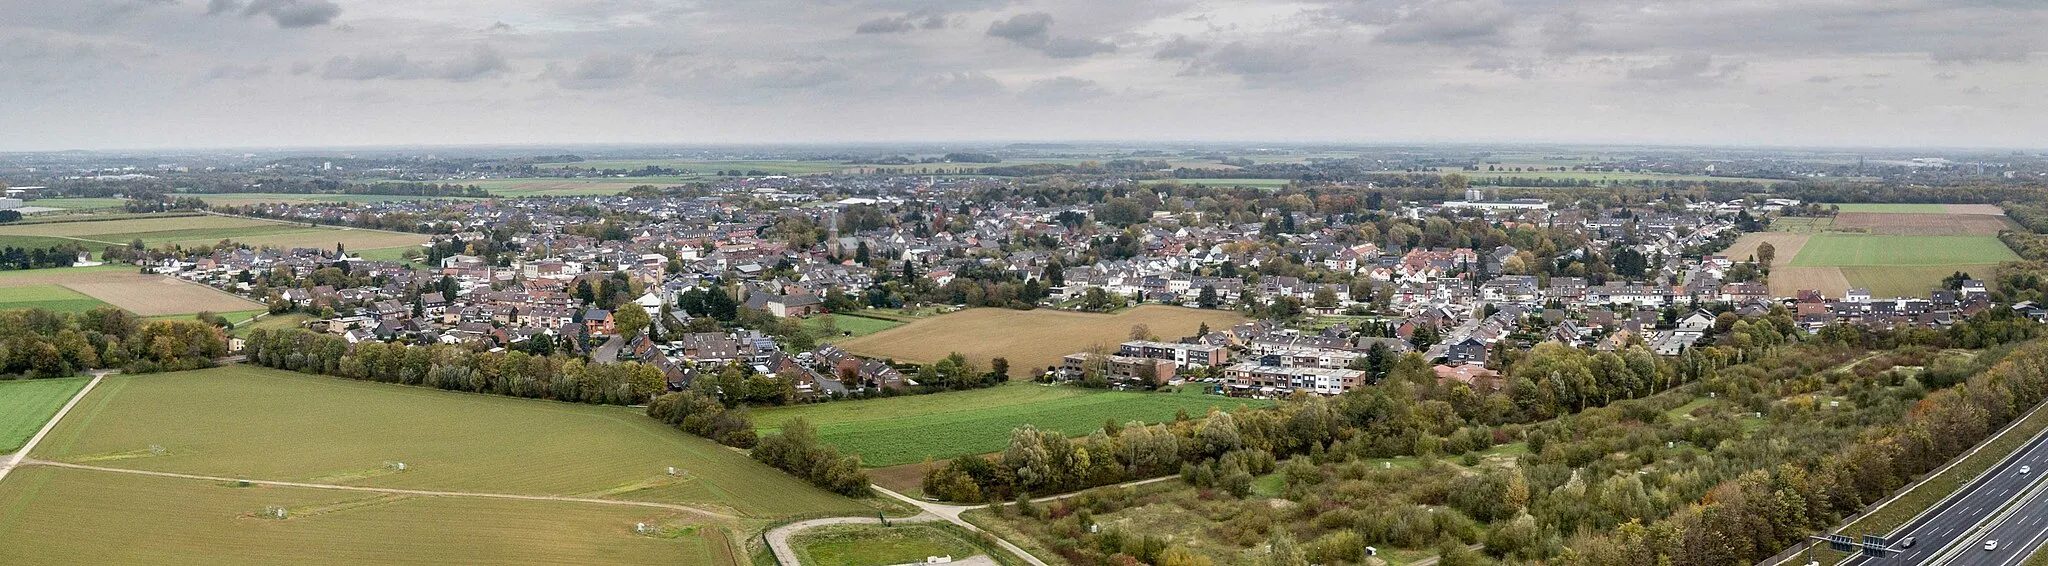 Photo showing: Hochneukirch liegt südlich von Mönchengladbach und grenzt unmittelbar nördlich an das Braunkohletageabbaugebiet von Garzweiler an. Nachbarorte von Hochneukirch fielen der Braunkohle zum Opfer. Die Aufnahme entstand aus 100 Metern Höhe als kleines Panorama.